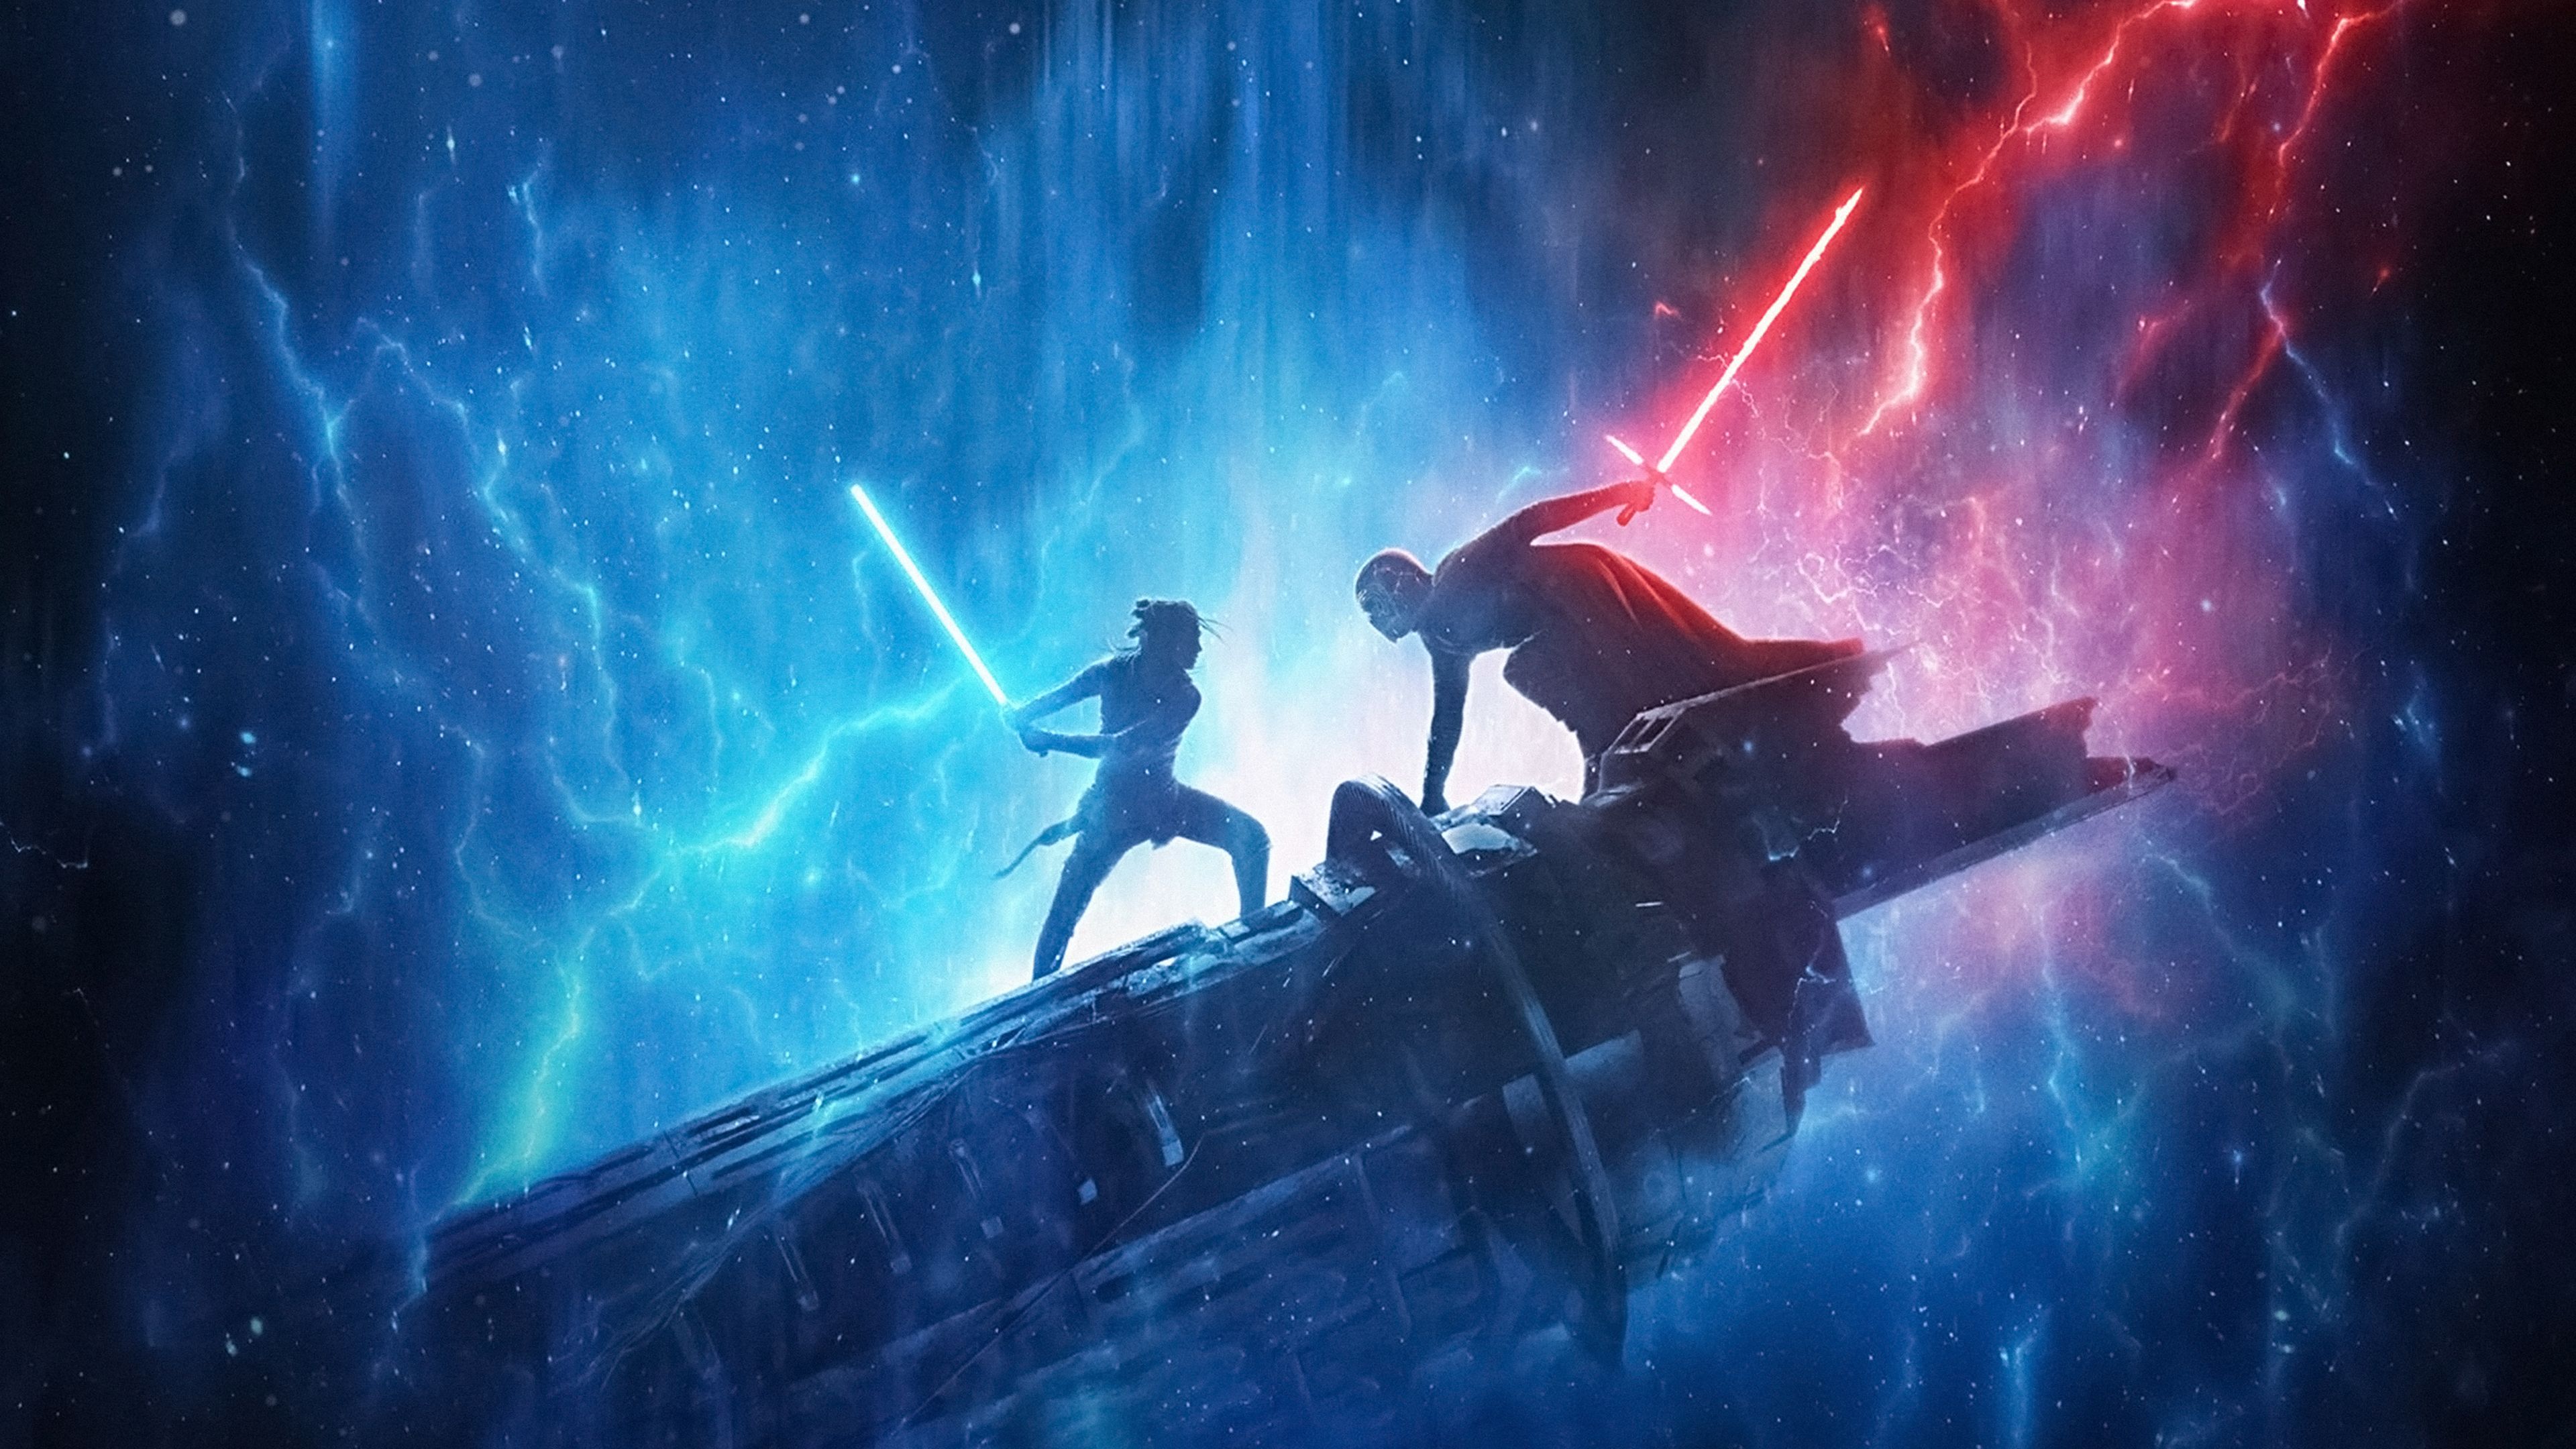 Star Wars Rise of Skywalker 2019 4K Wallpaper. HD Wallpaper